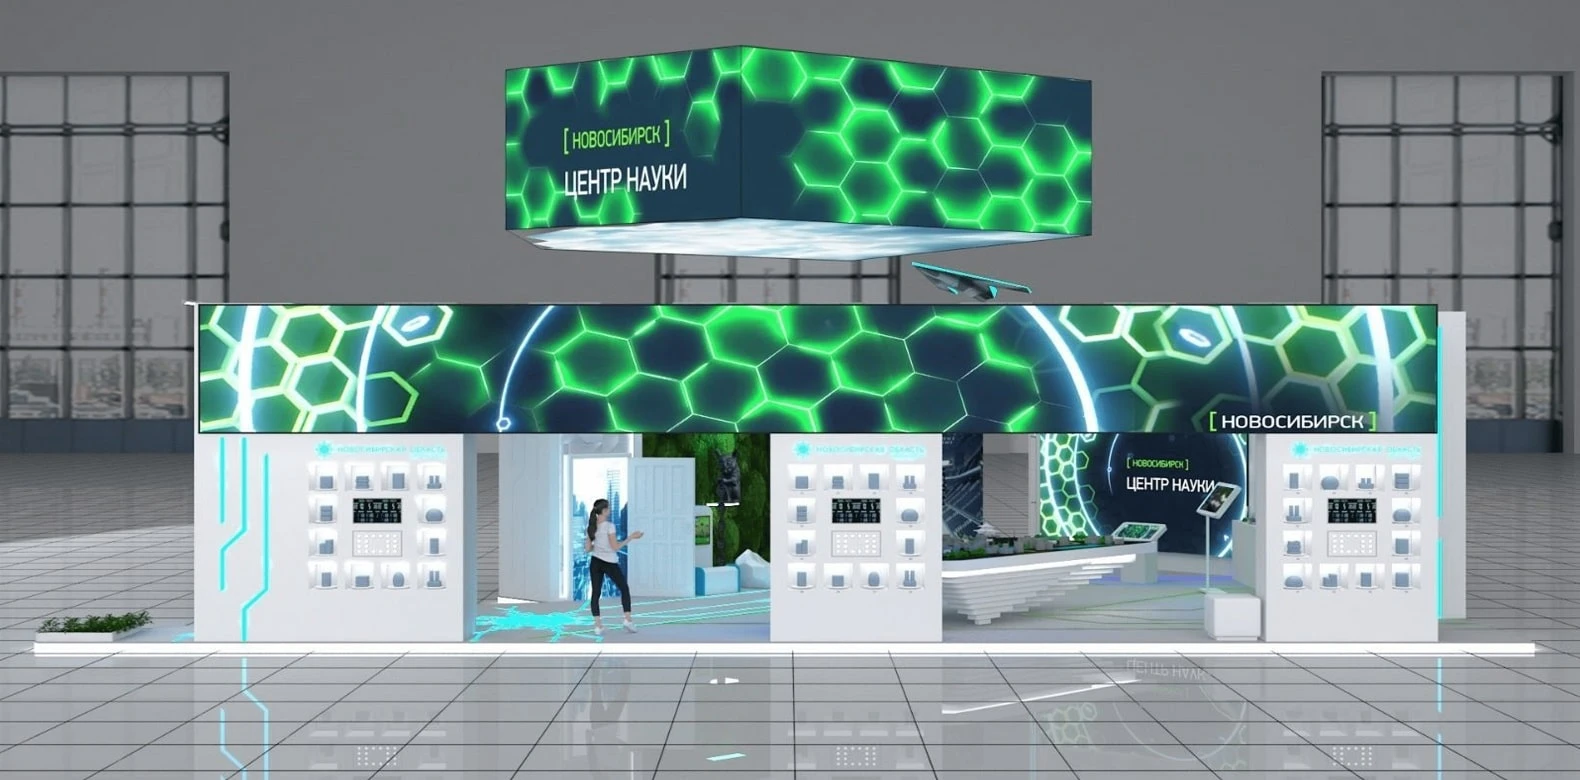 VR-путешествие по Новосибирской области ждёт на выставке "Россия"